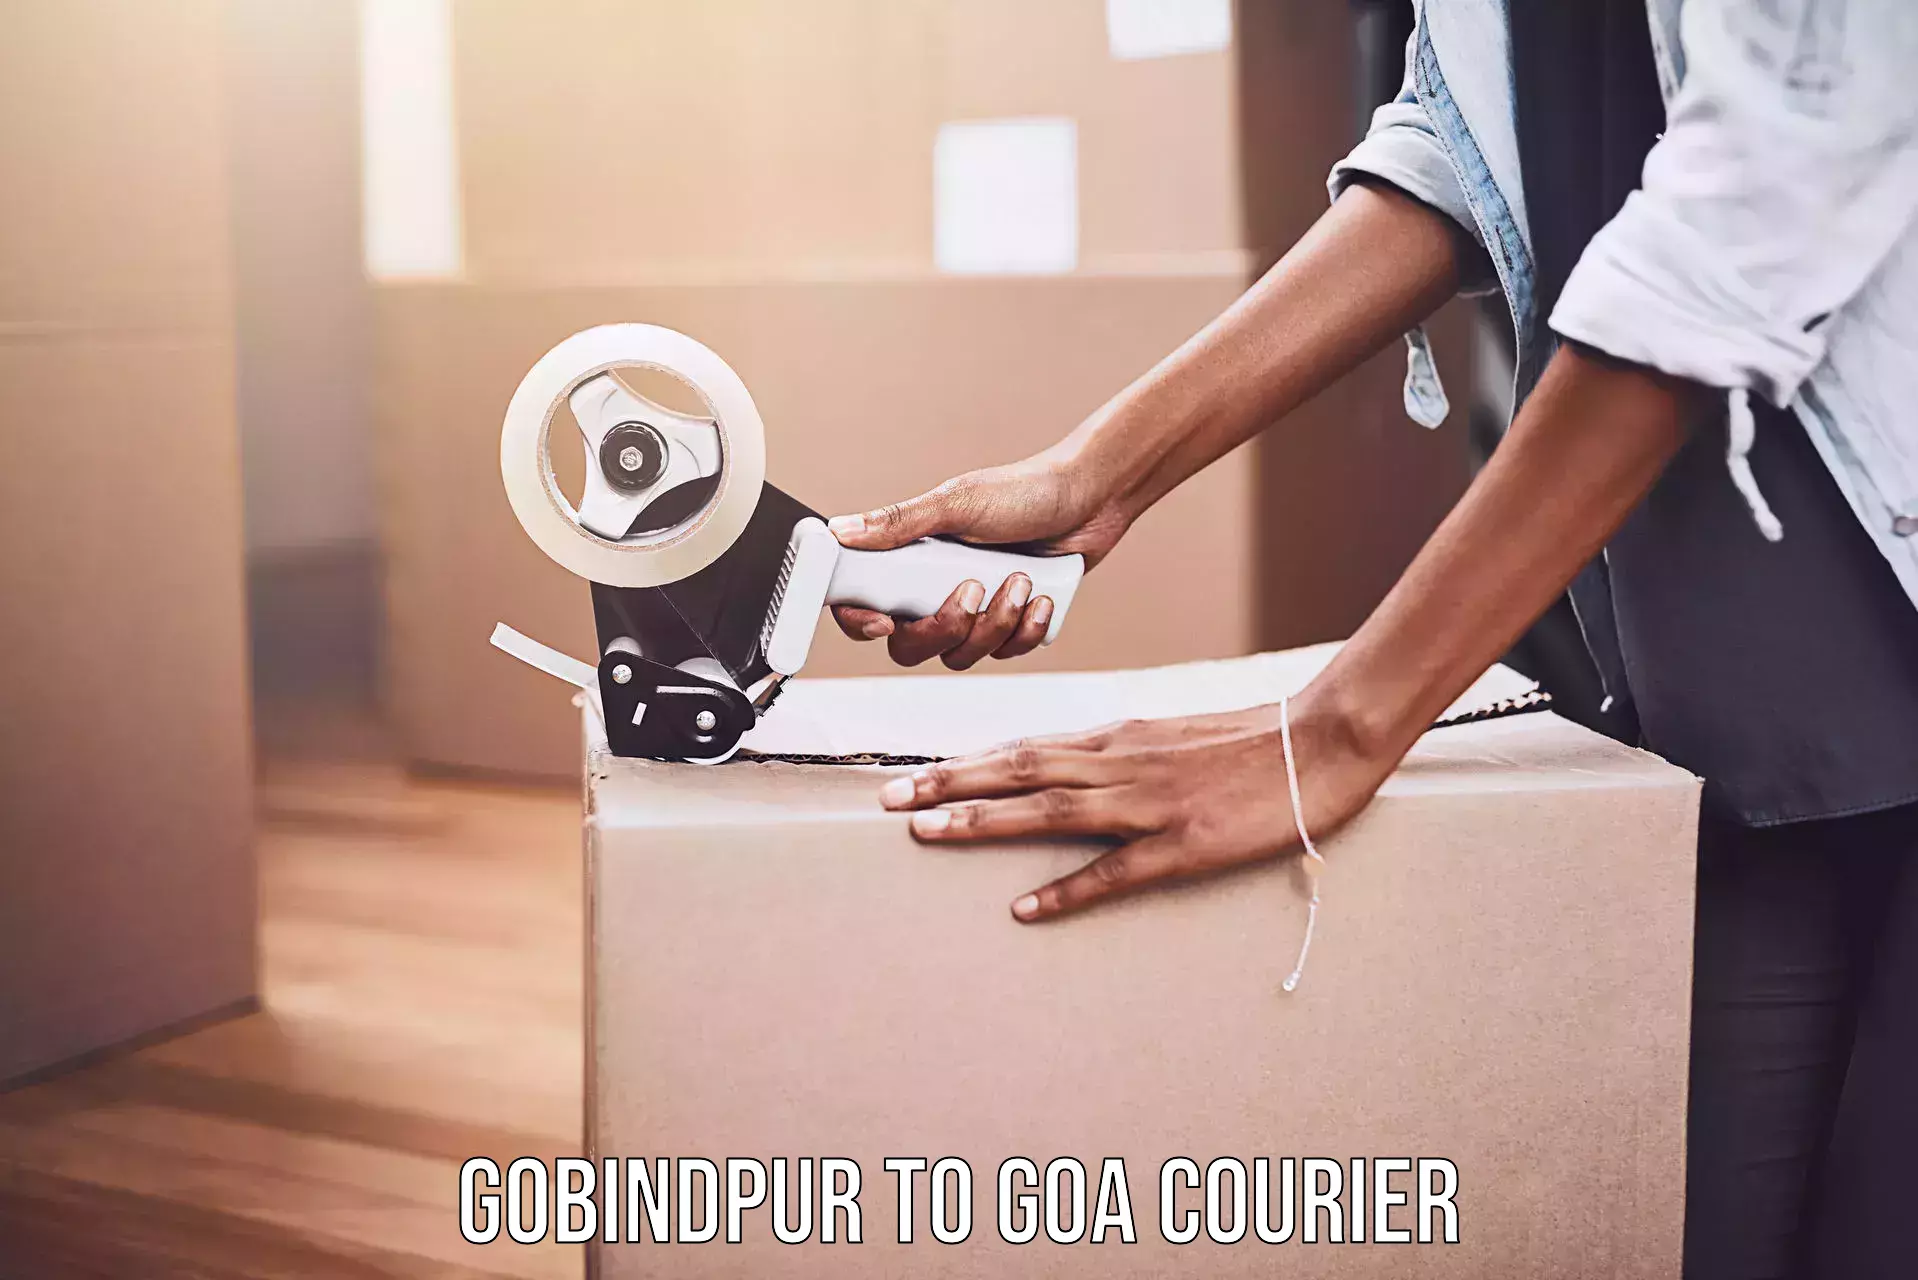 Cargo courier service Gobindpur to Ponda